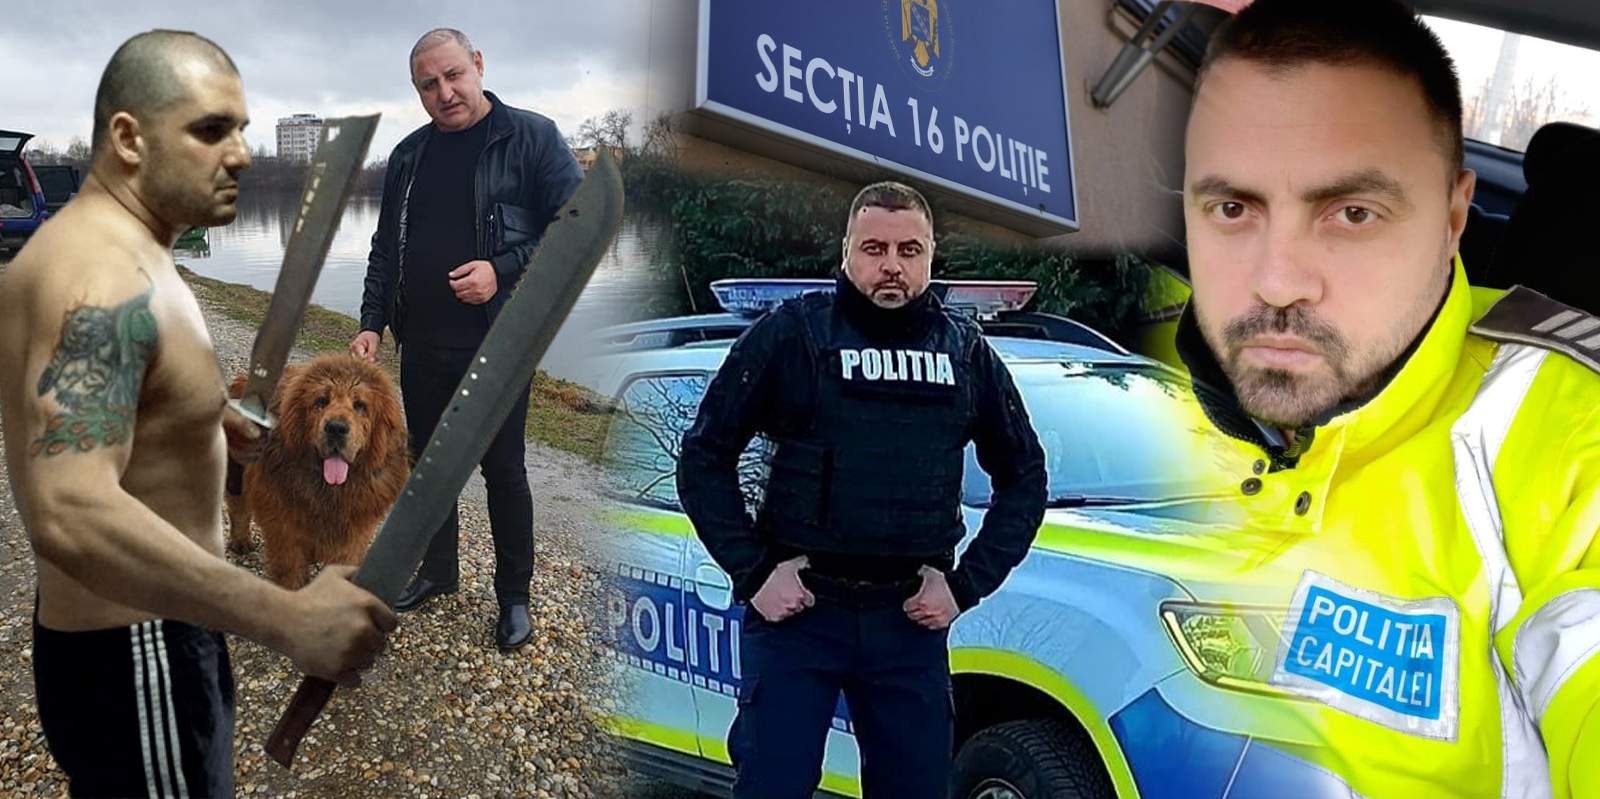 Șeful torționarilor de la Secția 16, ploconeală în fața liderilor interlopi Petre Geamănu și Mircea Ursu / Emblema Poliției Române a început cu stângul relația cu „Împăratul lumii interlope” și „Bodyguardul lui Dumnezeu”